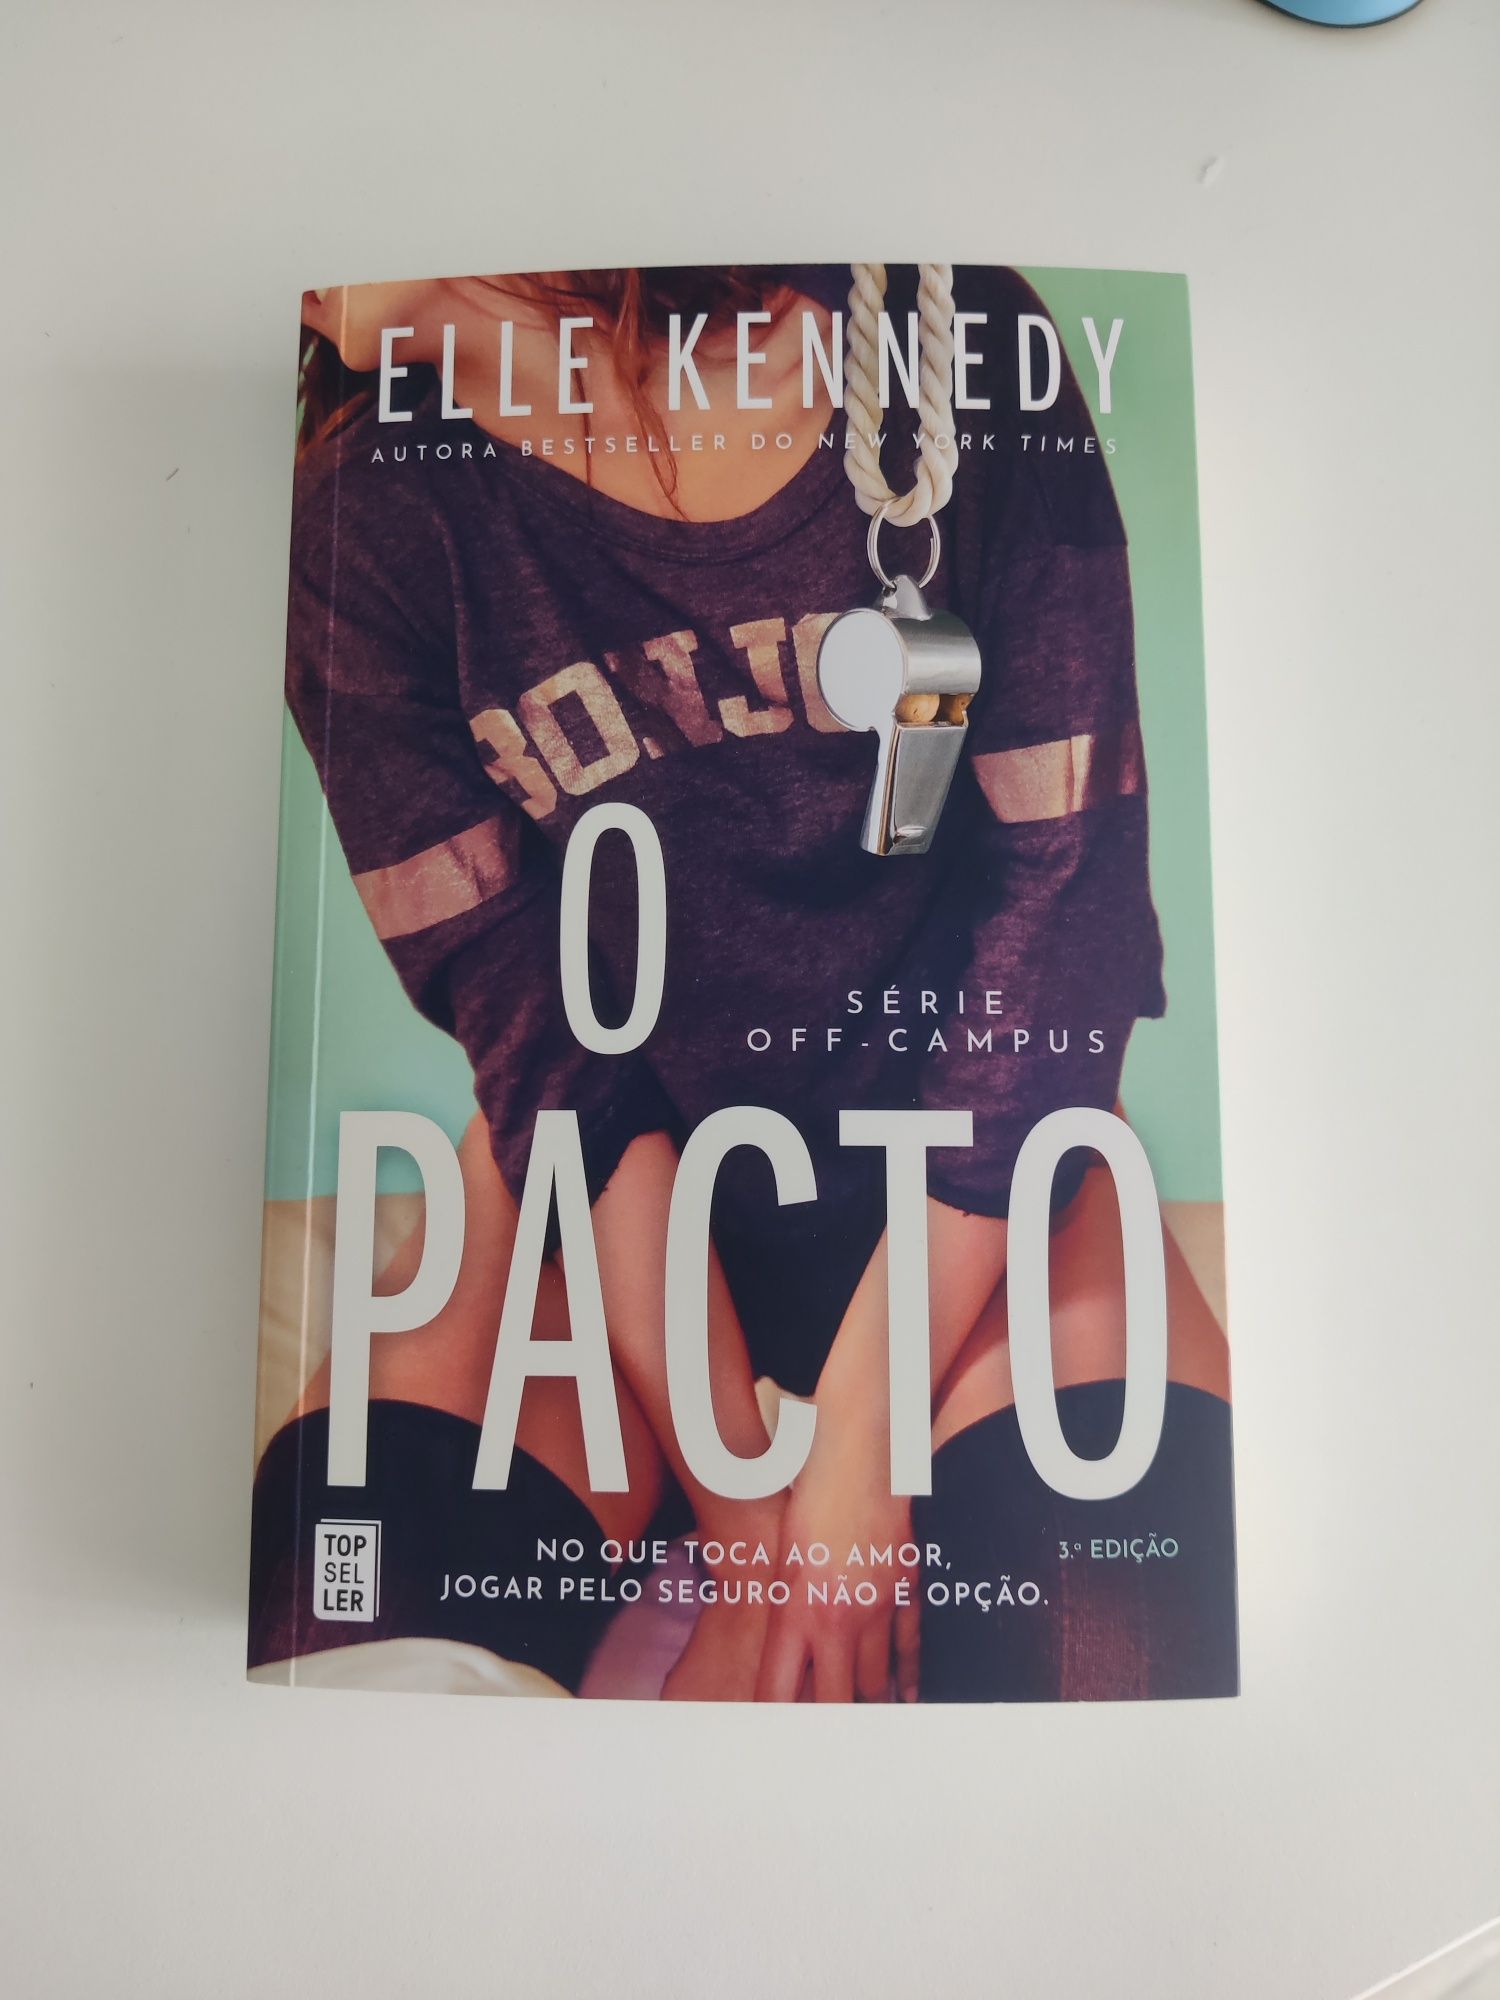 Livro "O Pacto" de Elle Kennedy